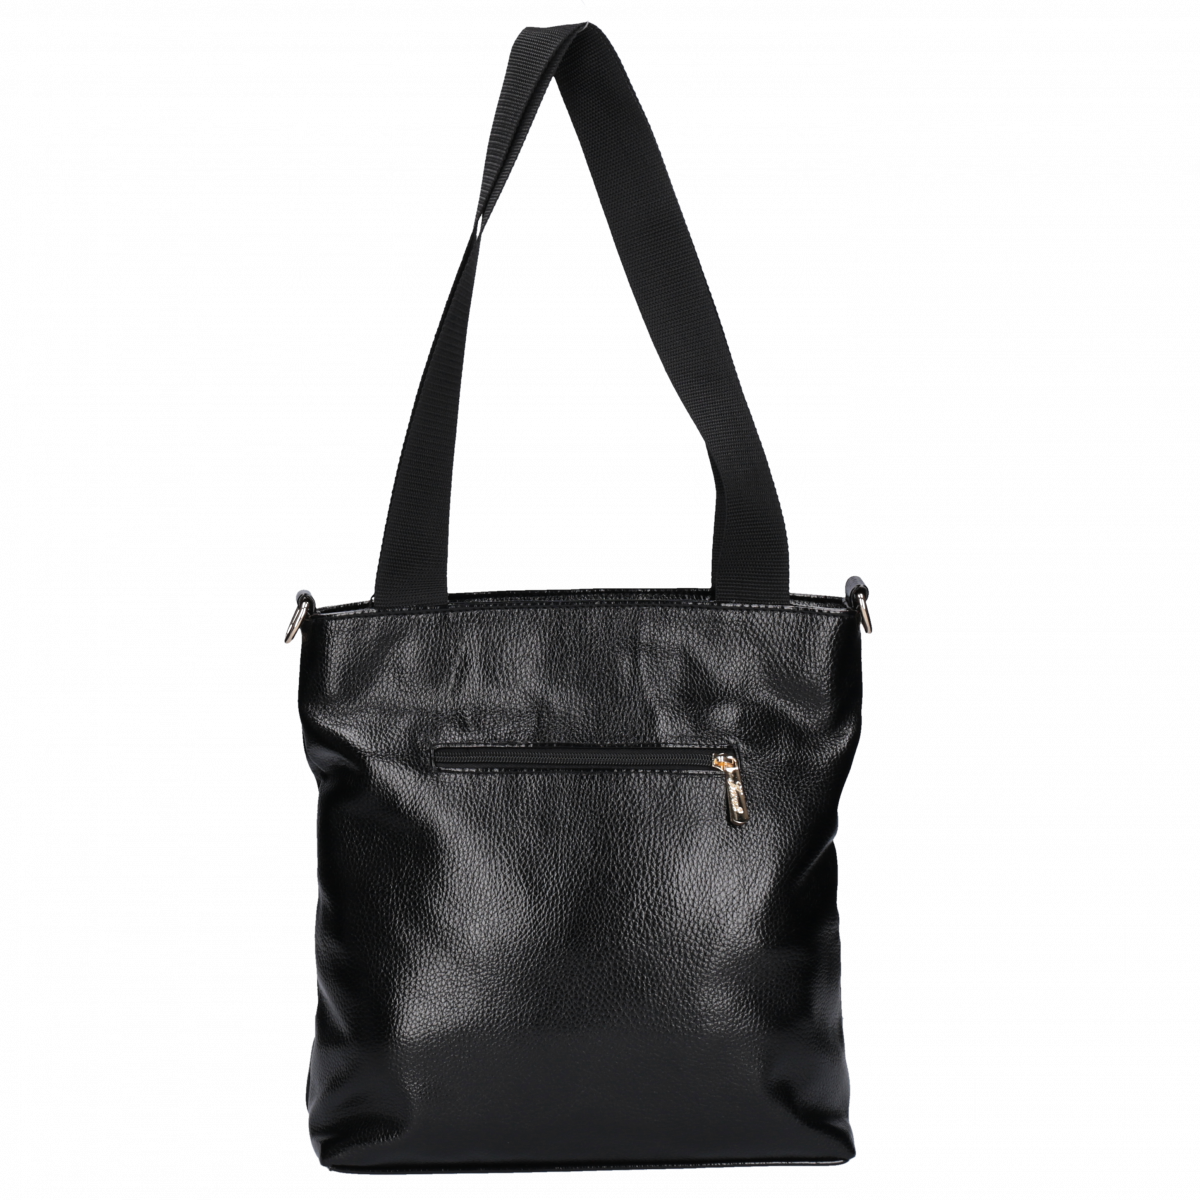 Karen shopper táska elöl zsebes fekete/ezüst 2322